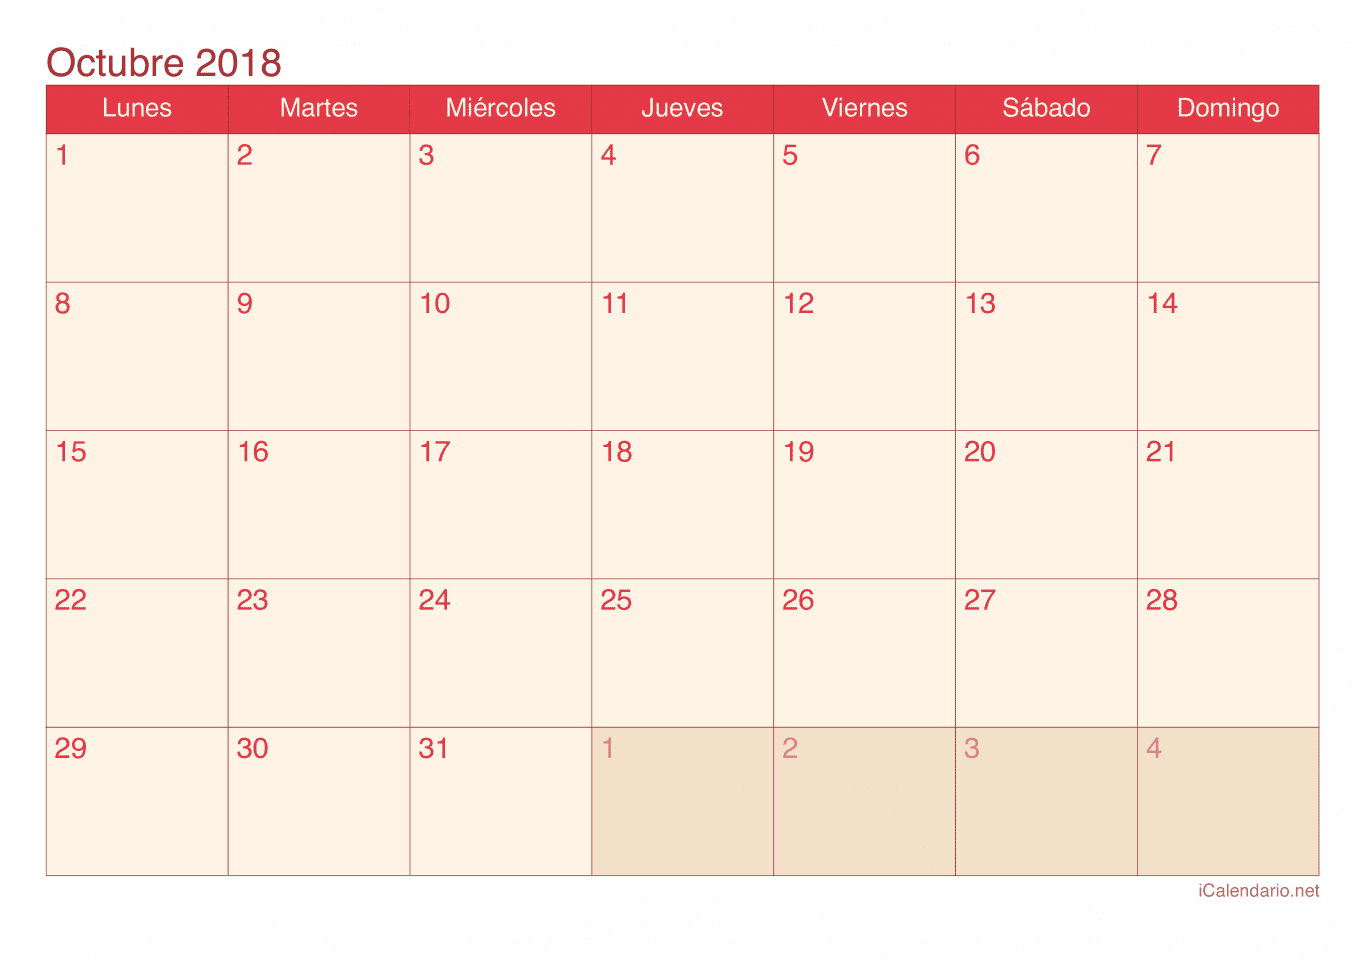 Calendario de octubre 2018 - Cherry